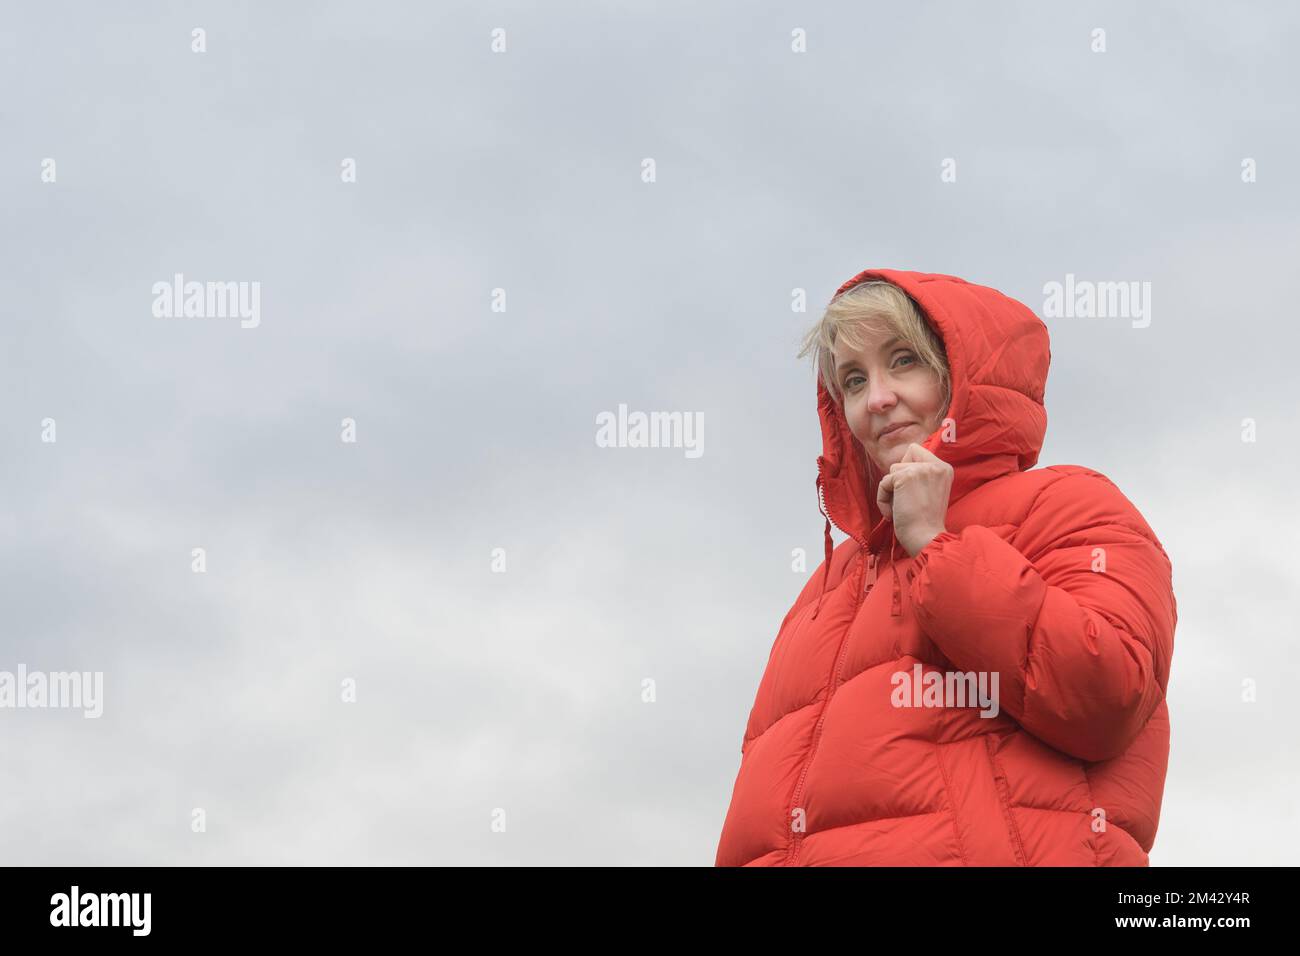 Une femme dans une veste rouge. Portrait contre un ciel nuageux. copier l'espace Banque D'Images